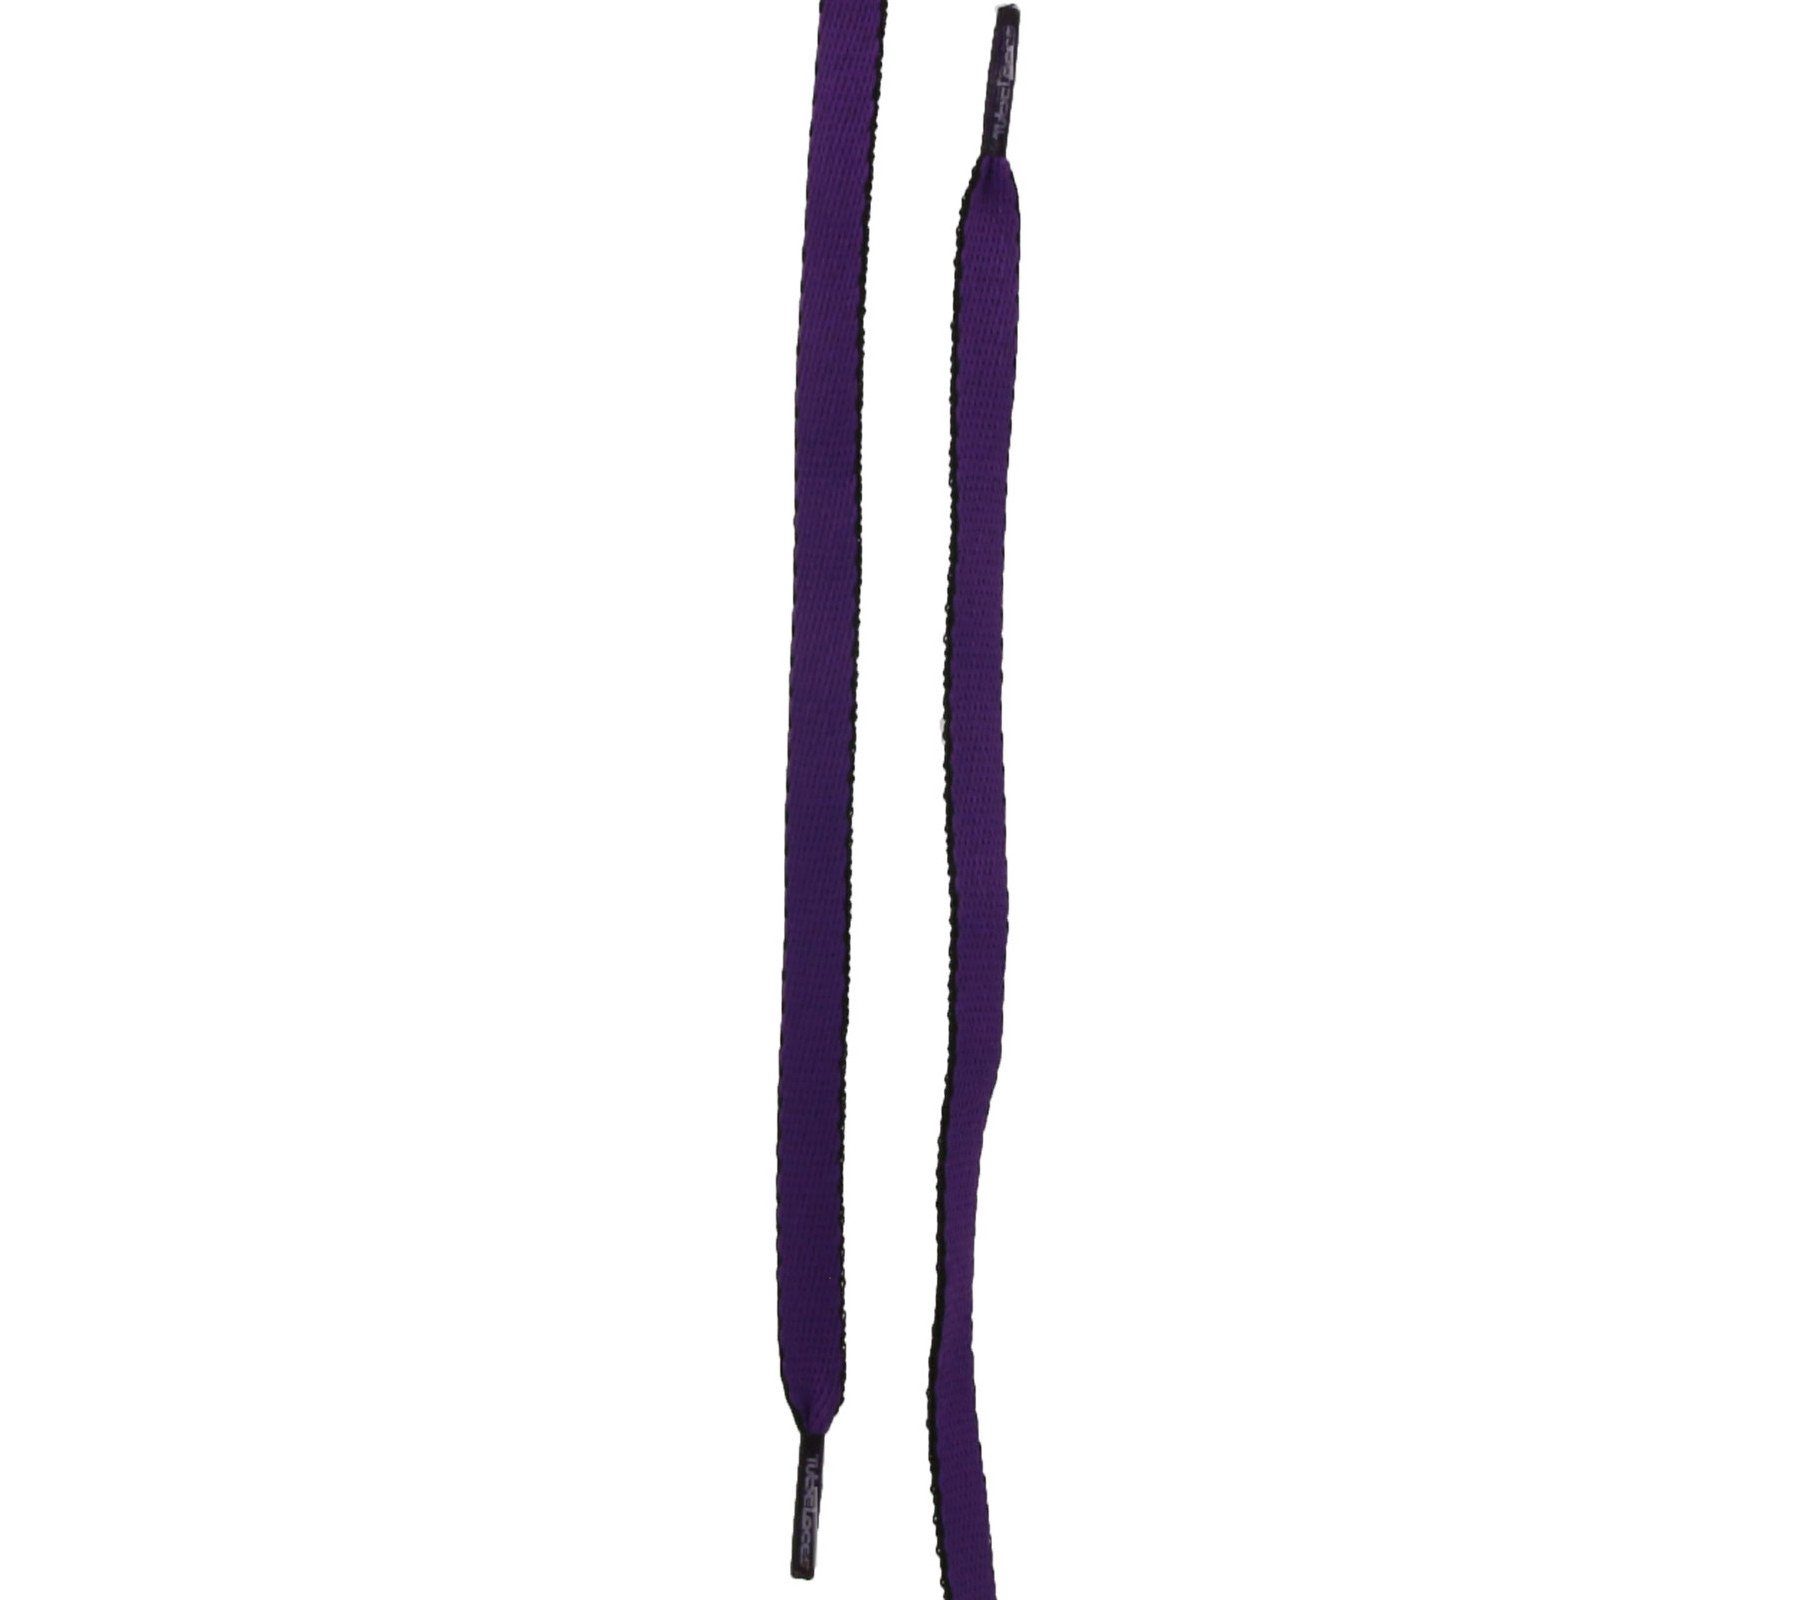 Tubelaces Schnürsenkel TubeLaces Schwarz/Violett Schnürbänder Schnürsenkel Schuhe trendige Schuhbänder